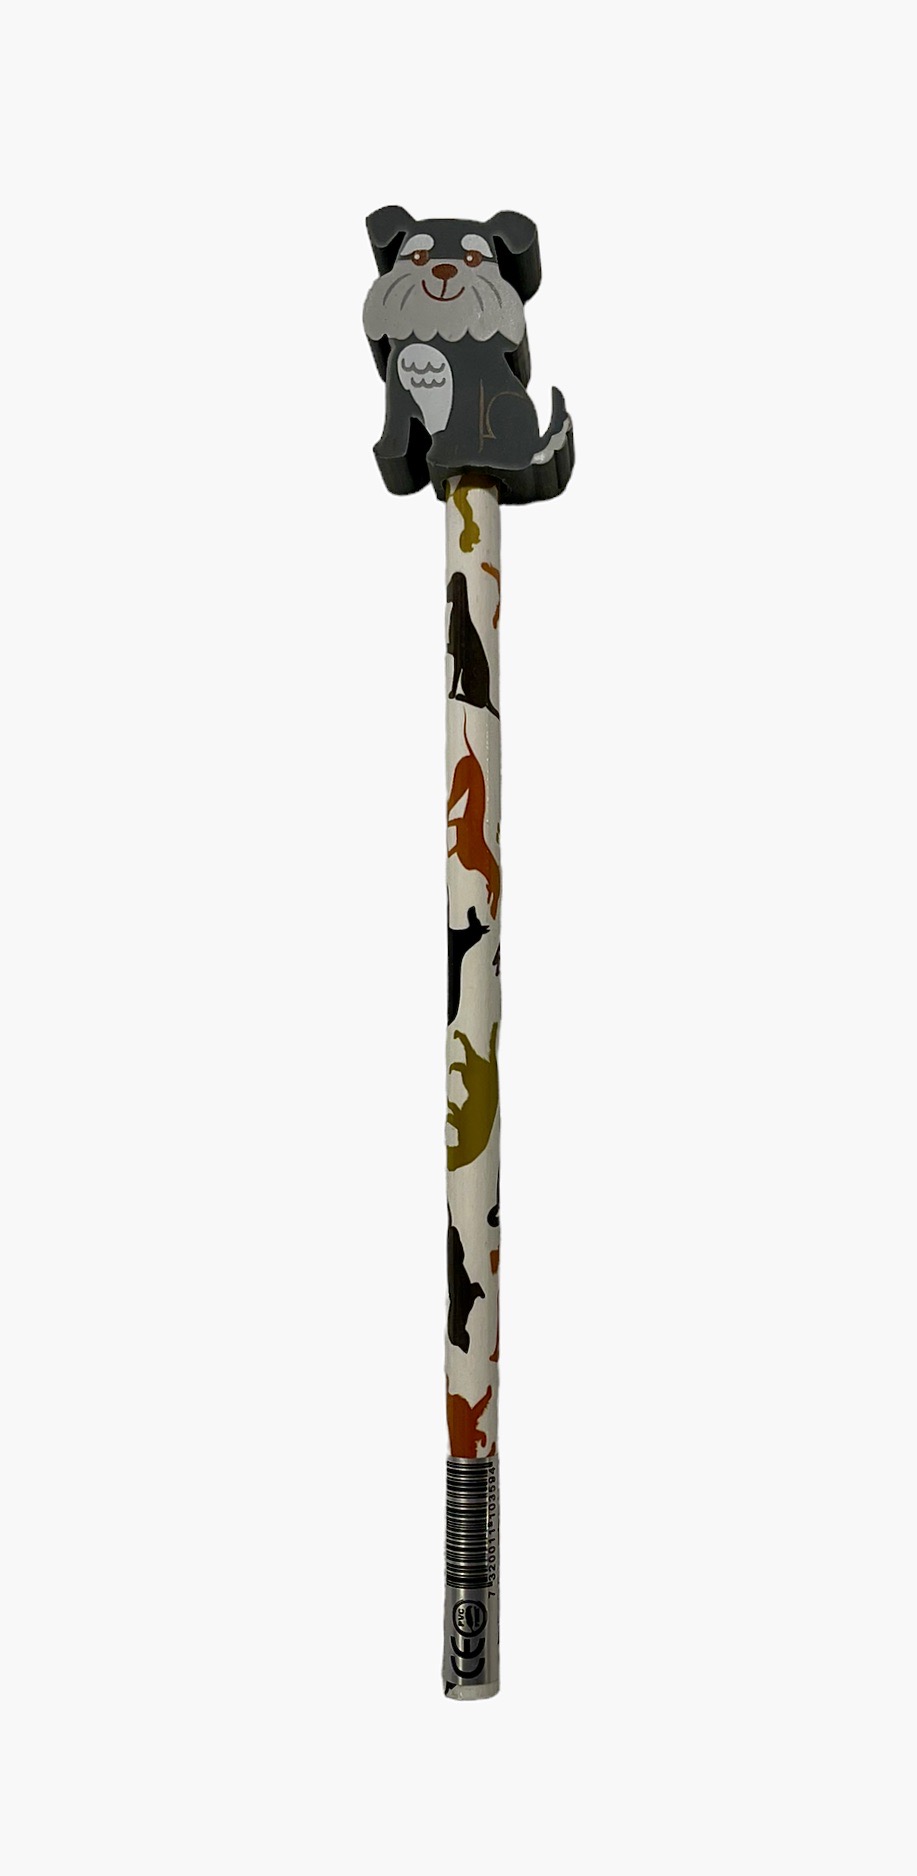 Schnauzer en blyertspenna med ett hundmönster och med en suddtopp i form av en söt Schnauzer från Pepper pot, längd 19 cm.